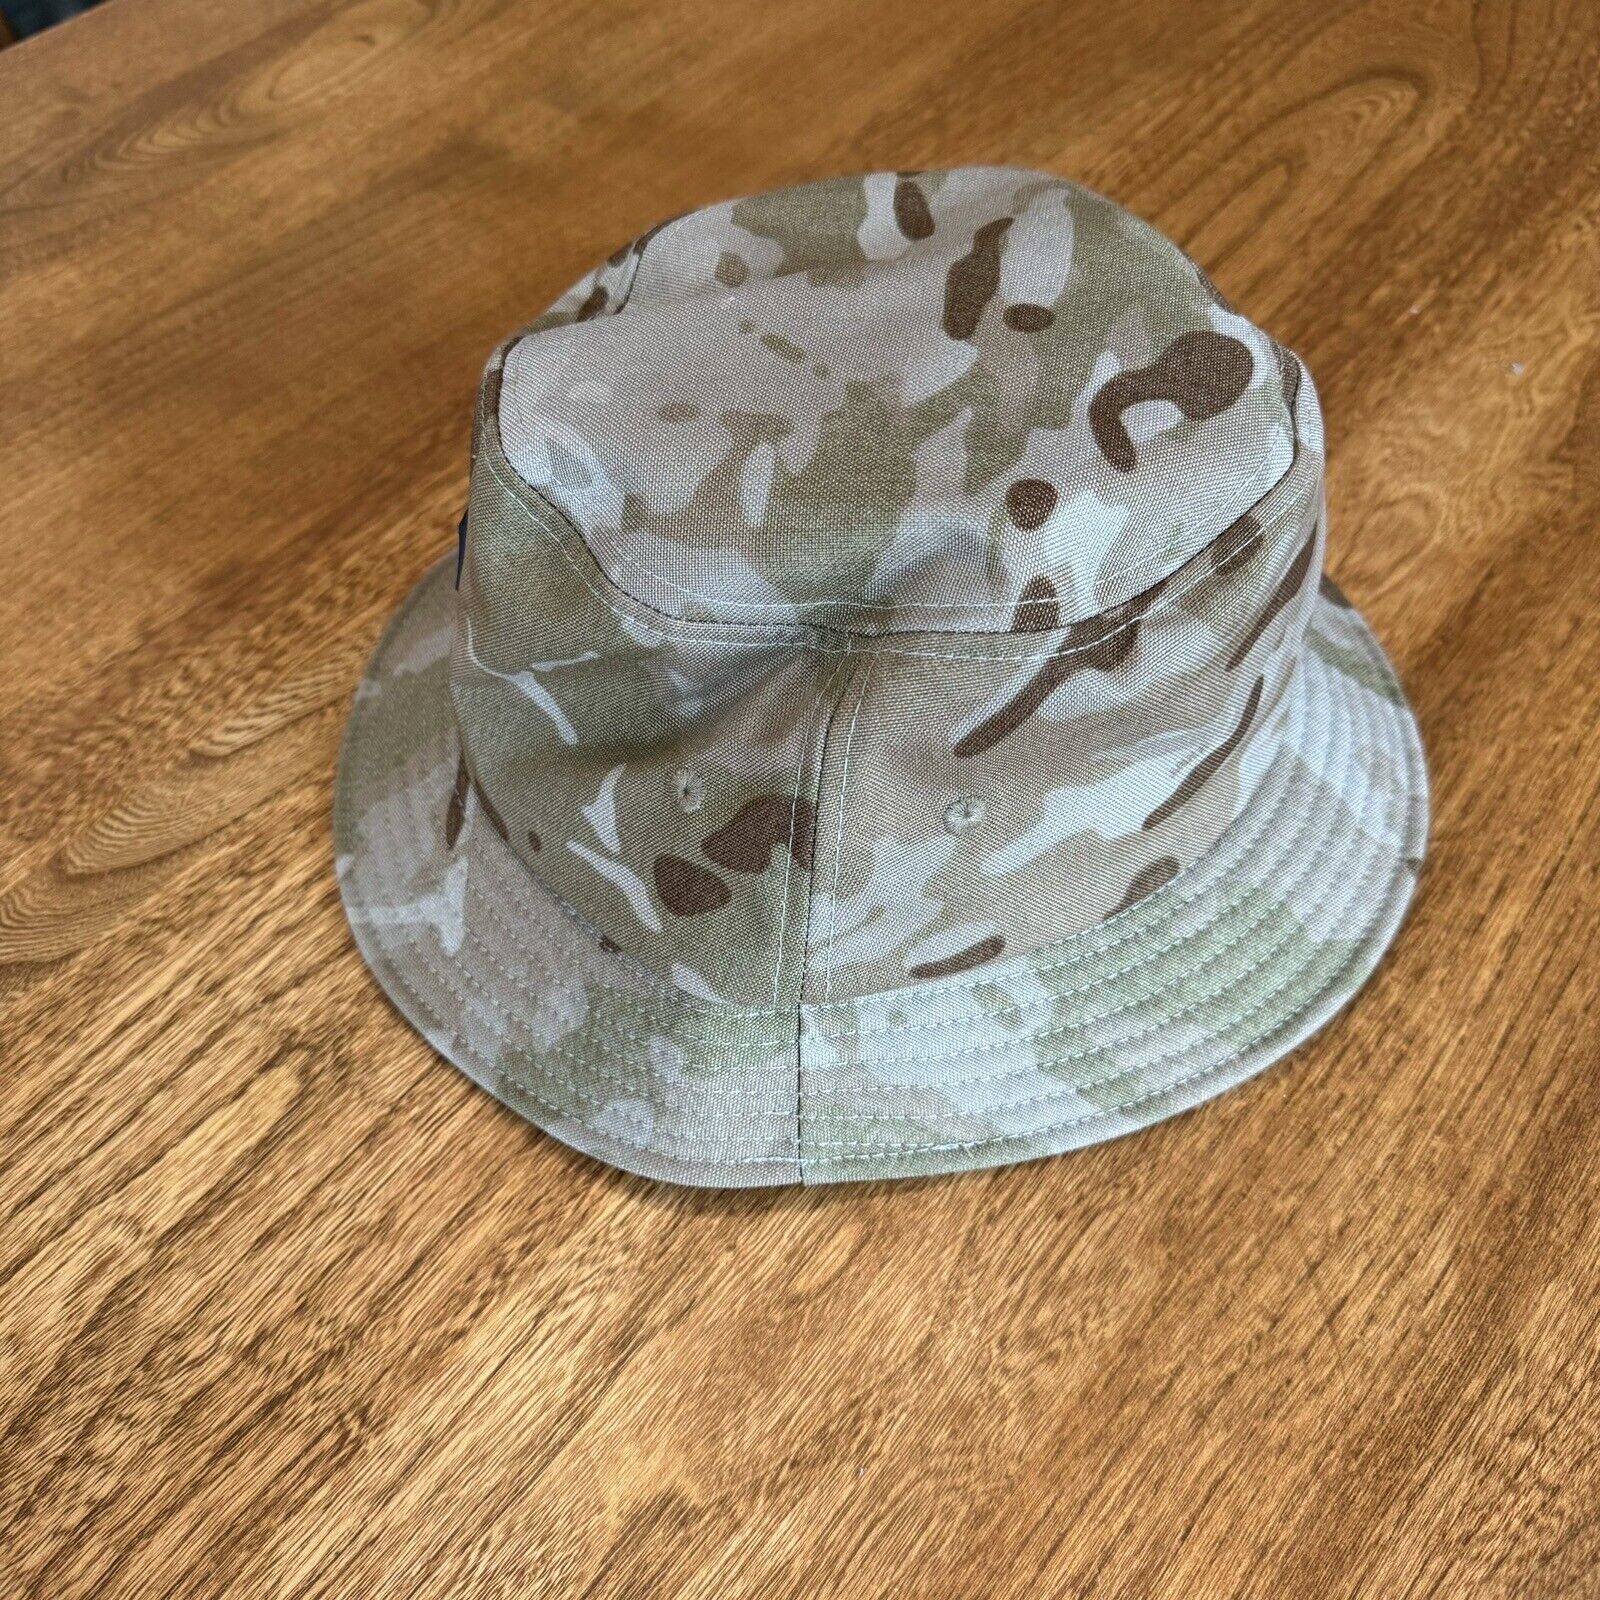 Qilo Tactical Arid Bucket Hat - Not WRMFZY SUPDEF TFD FOG TFD